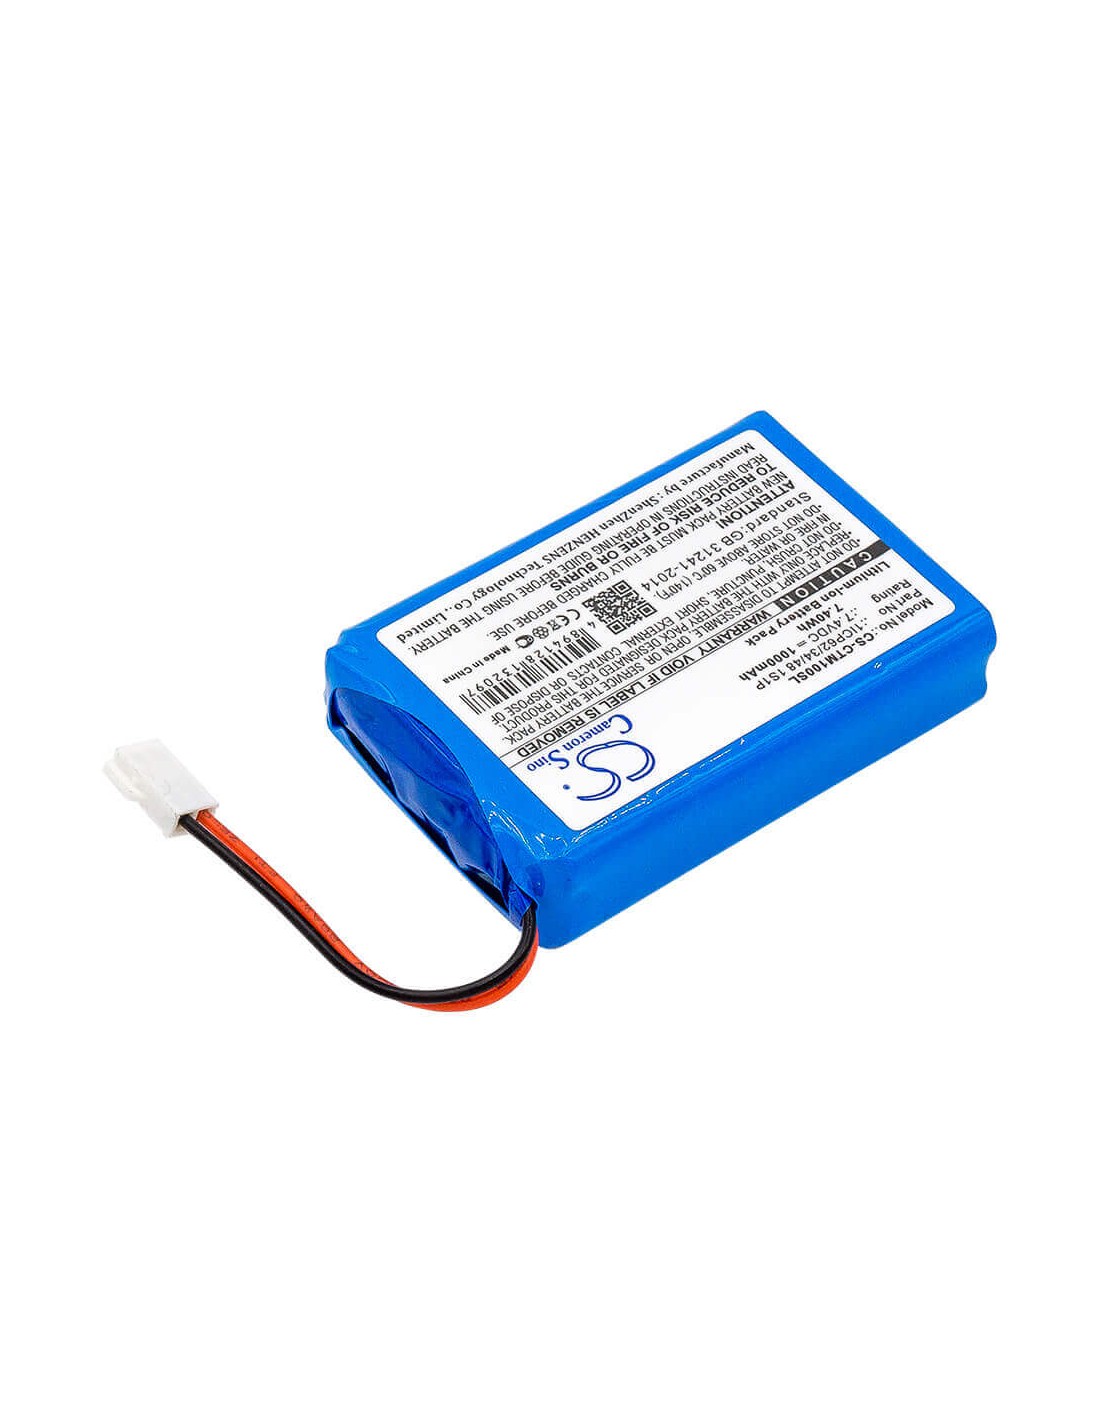 Battery for Ctms, Eurodetector 7.4V, 1000mAh - 7.40Wh